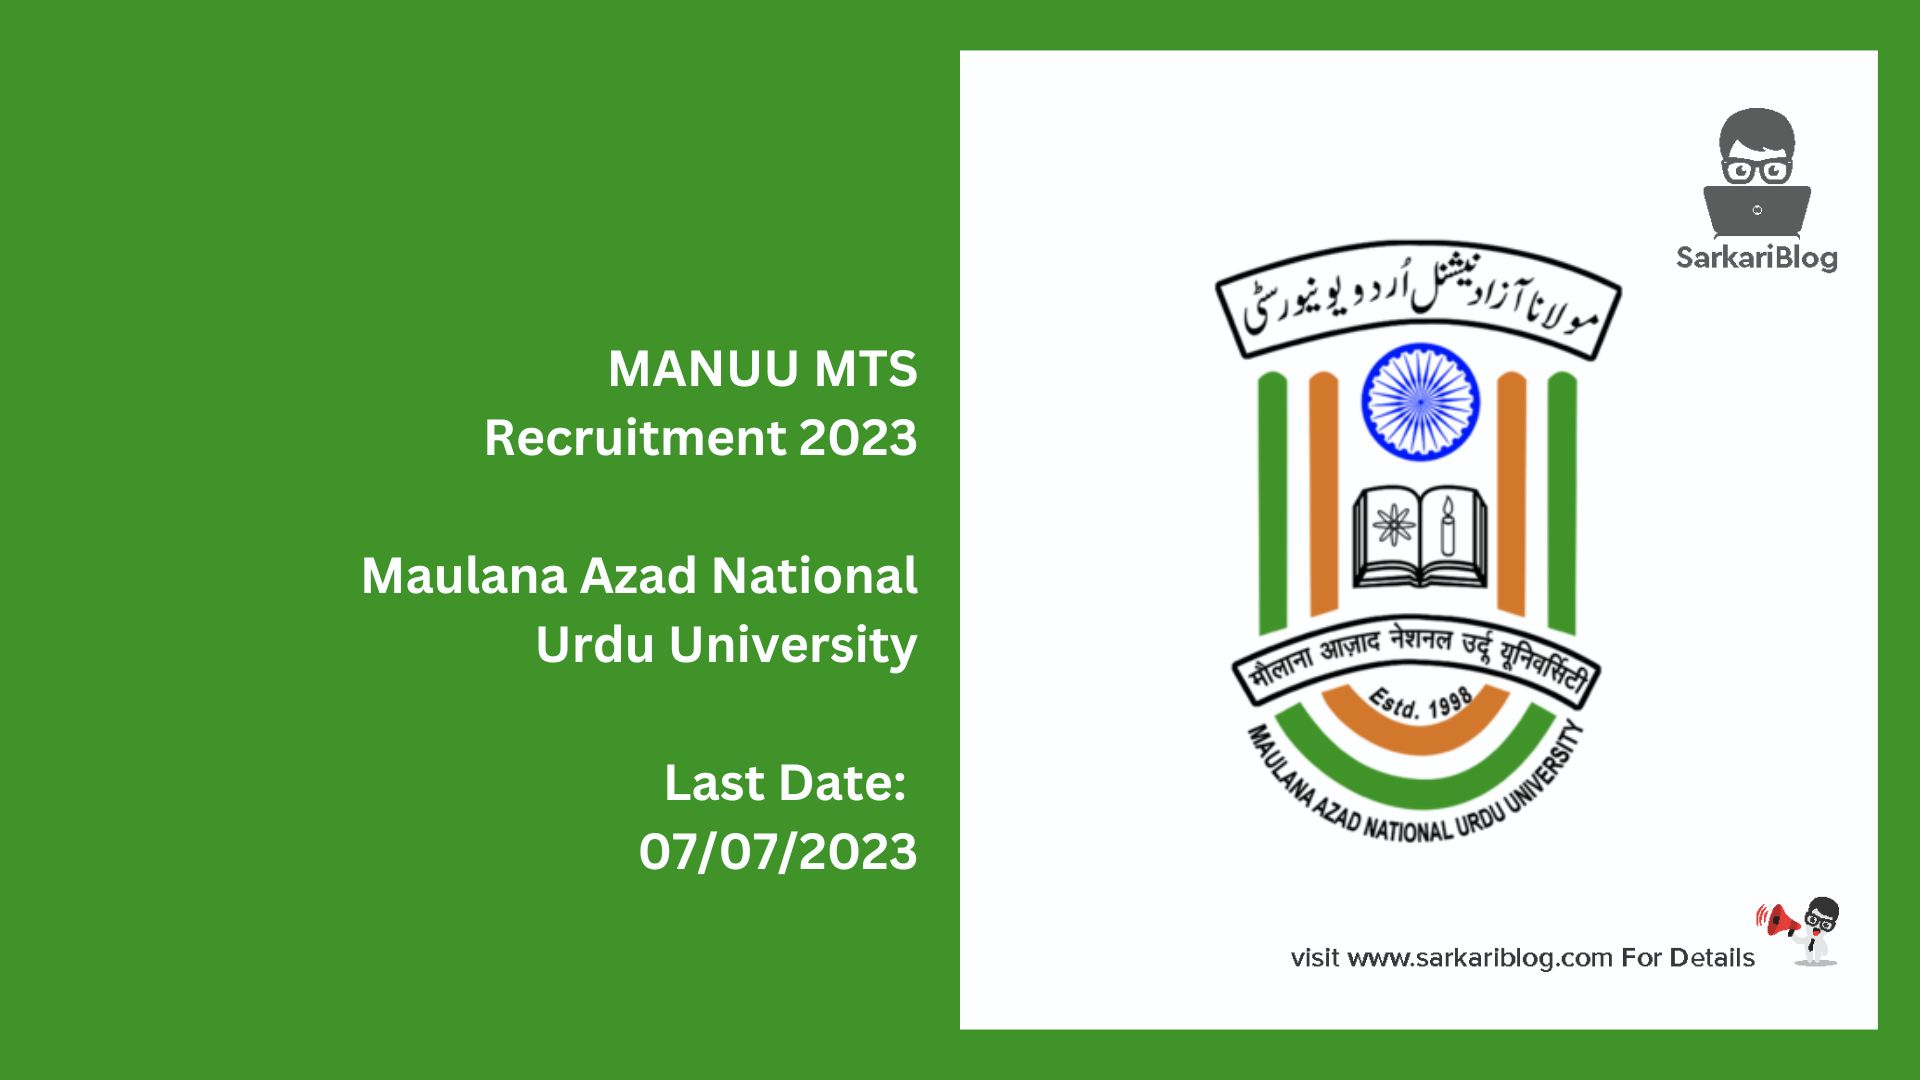 MANUU MTS Recruitment 2023